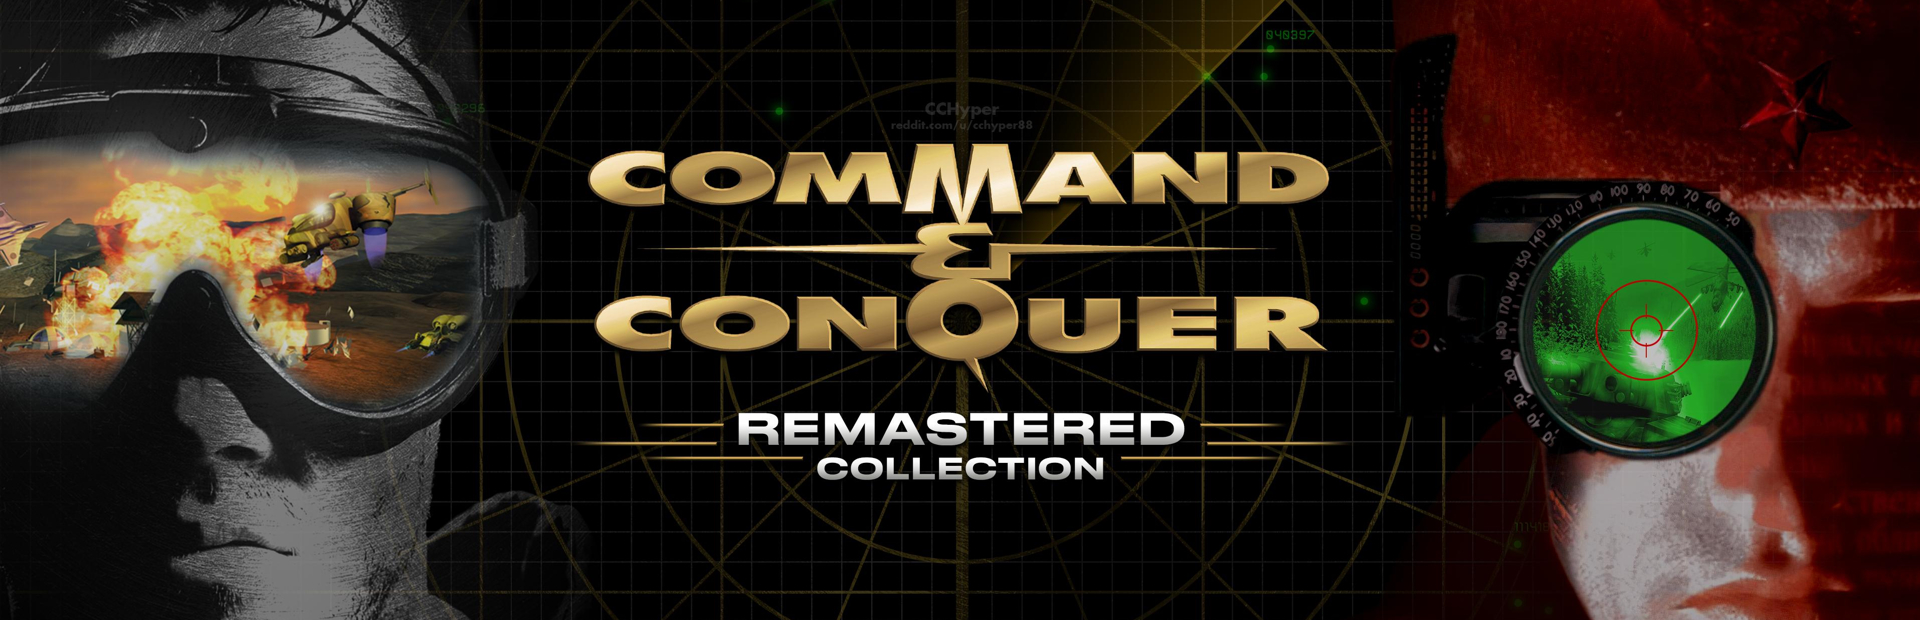 دانلود بازی Command & Conquer Remastered Collection برای PC | گیمباتو